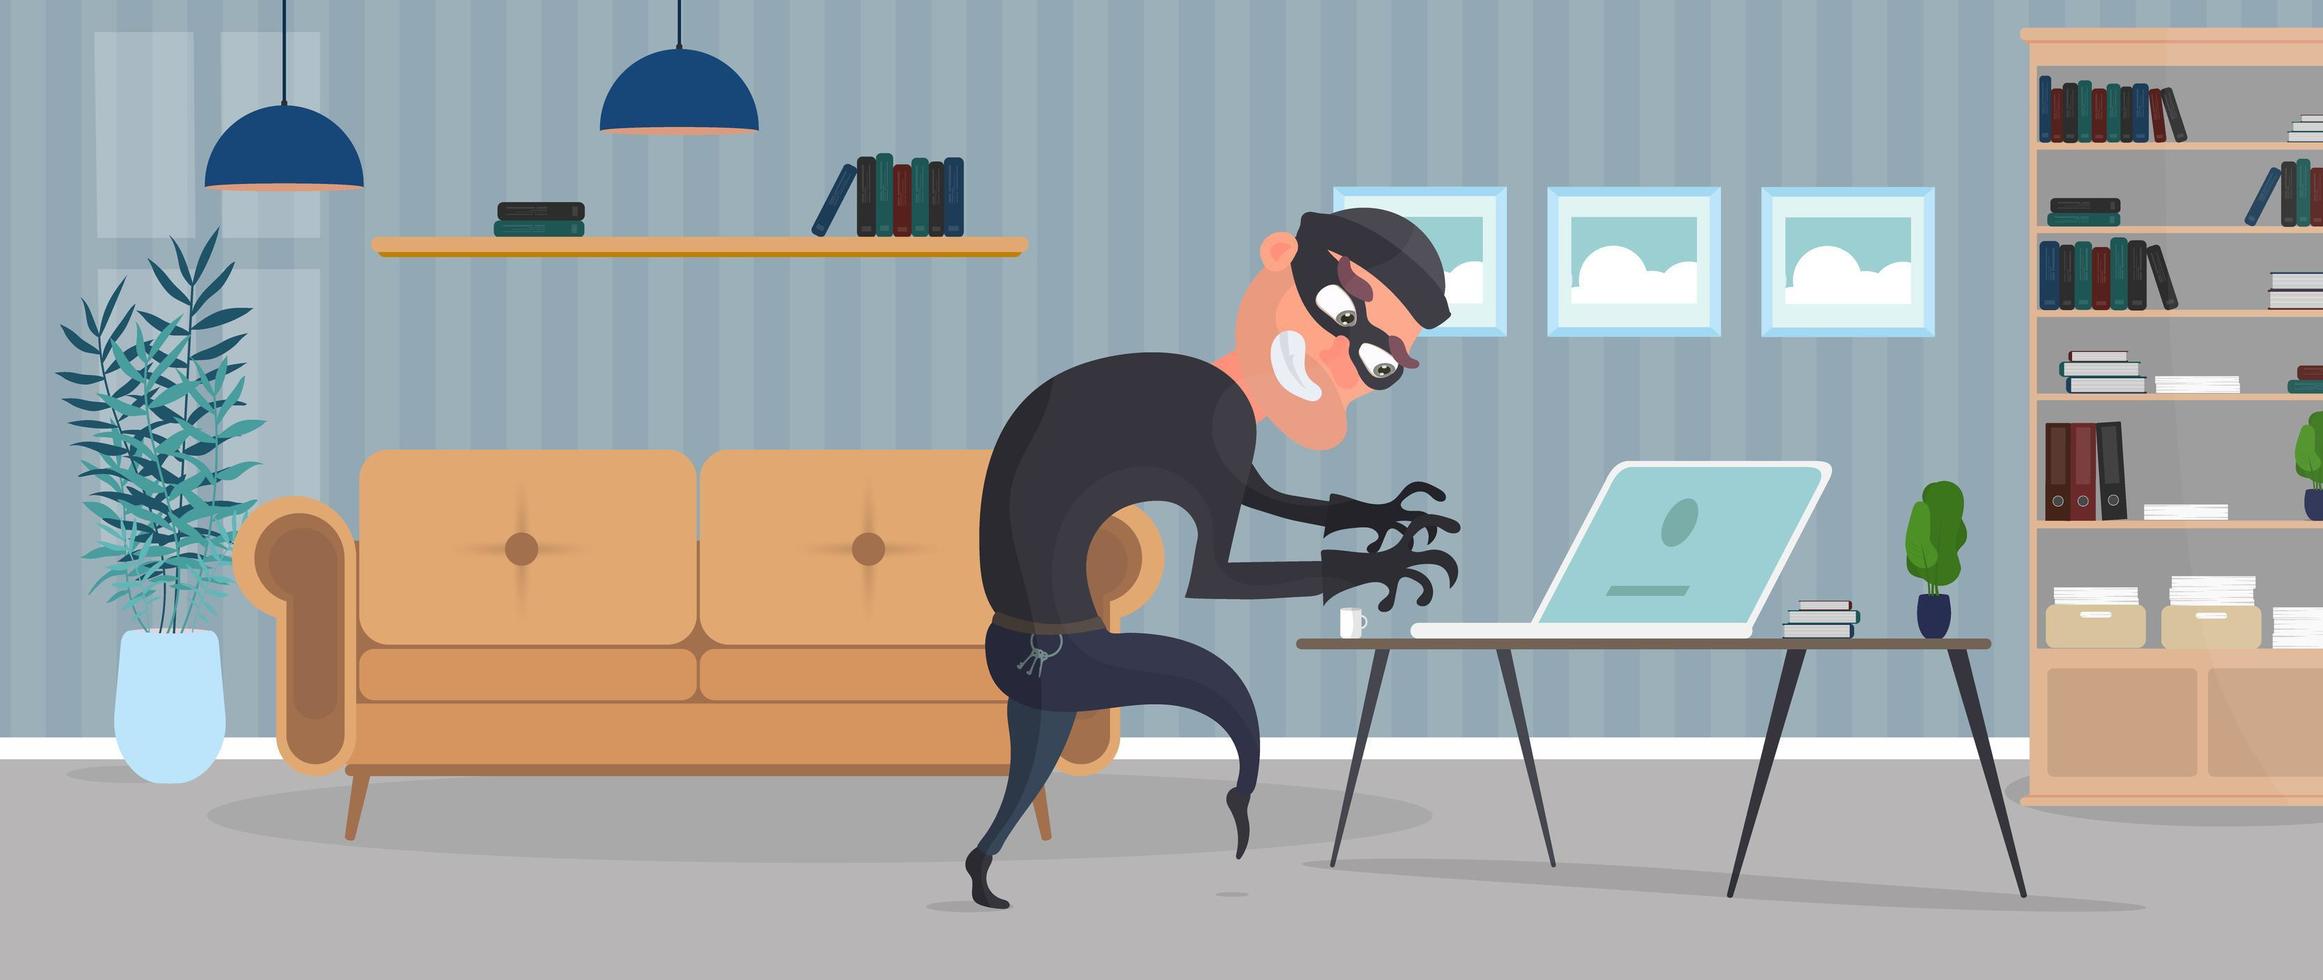 ladrão na casa. um ladrão rouba dados de um laptop. conceito de segurança. ladrão rouba um apartamento. roubo em casa. ilustração em vetor estilo simples.